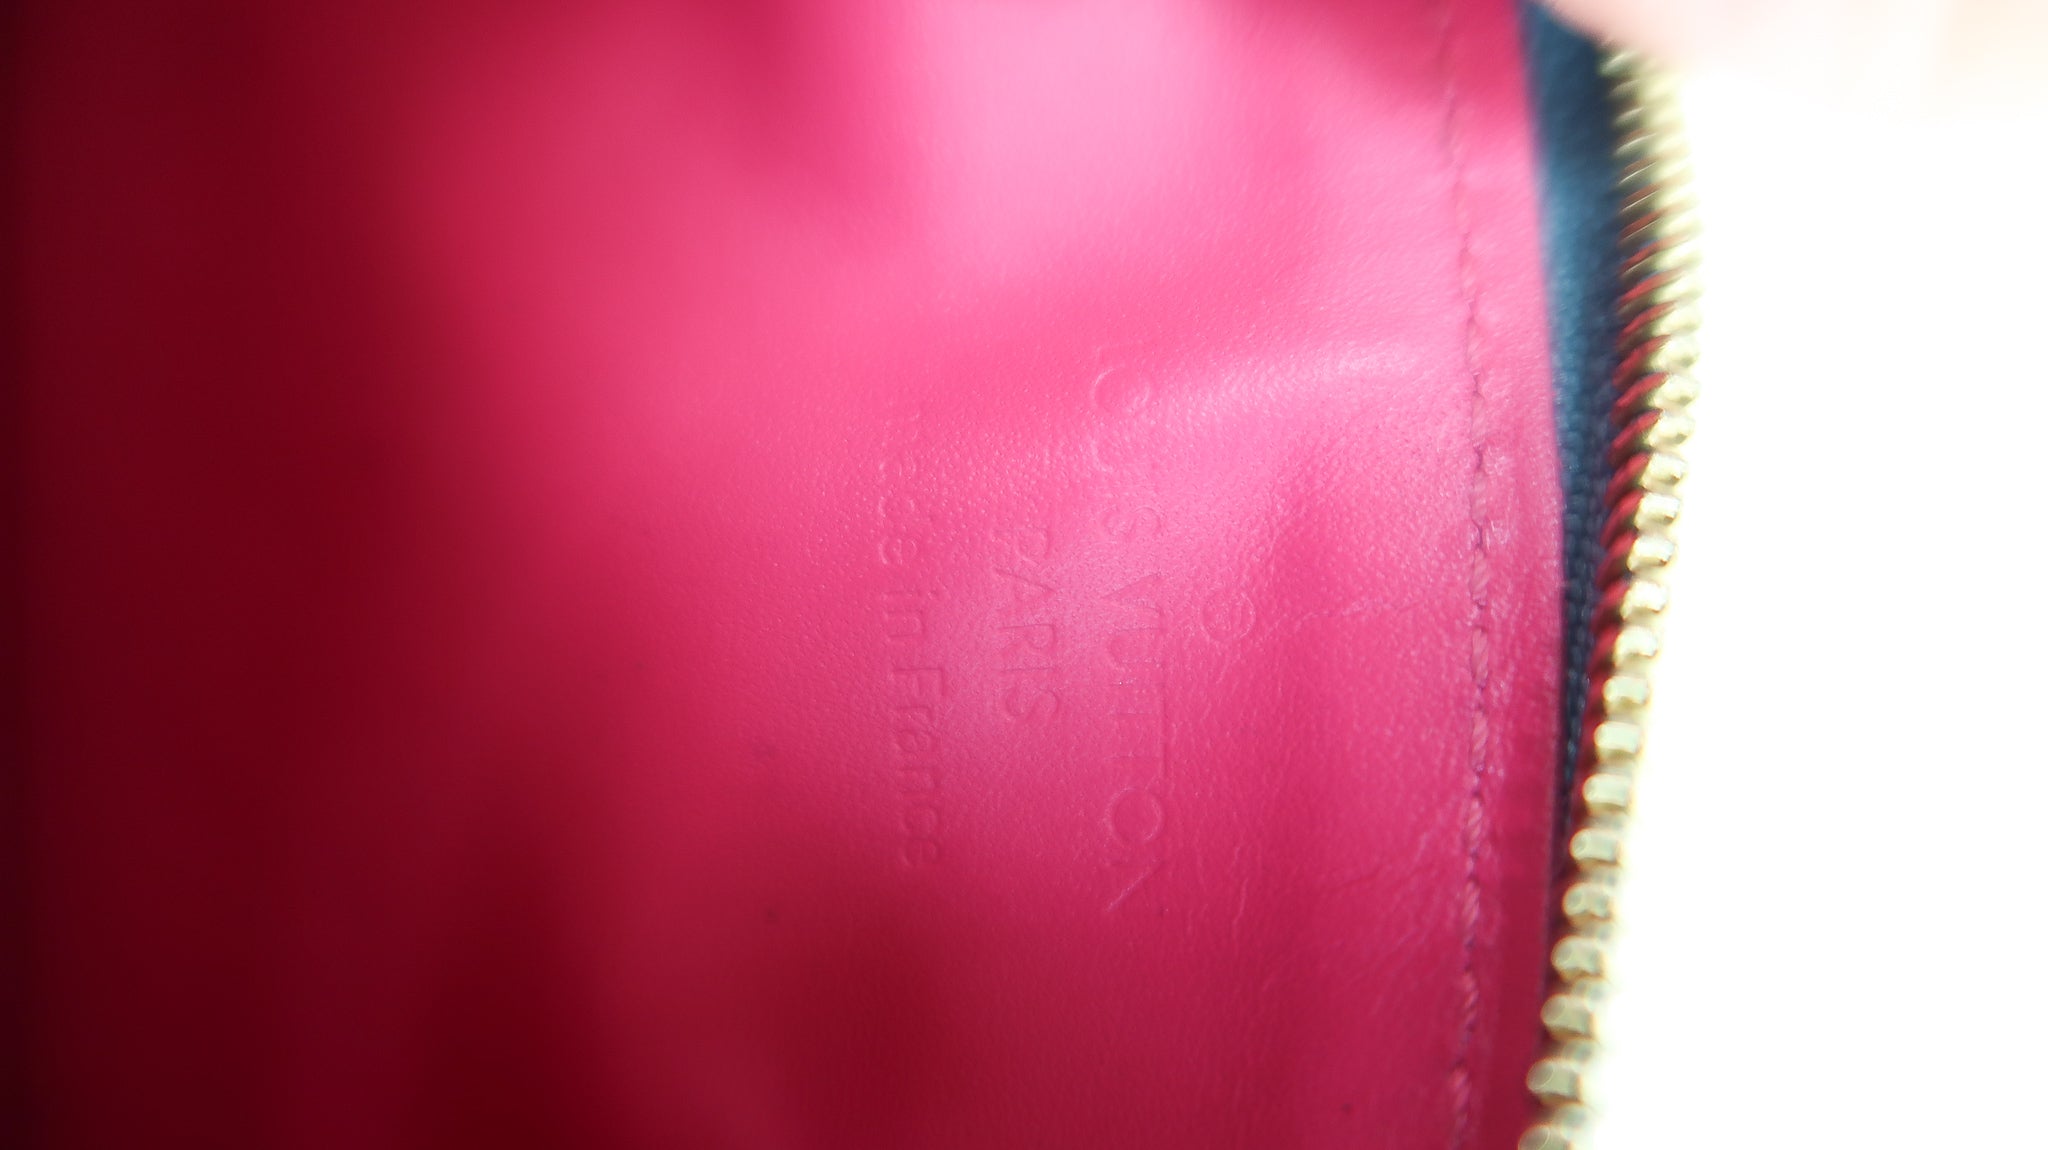 Louis Vuitton Monogram Metallic Vernis Key Pouch Case Pink Blue M90524 Auth